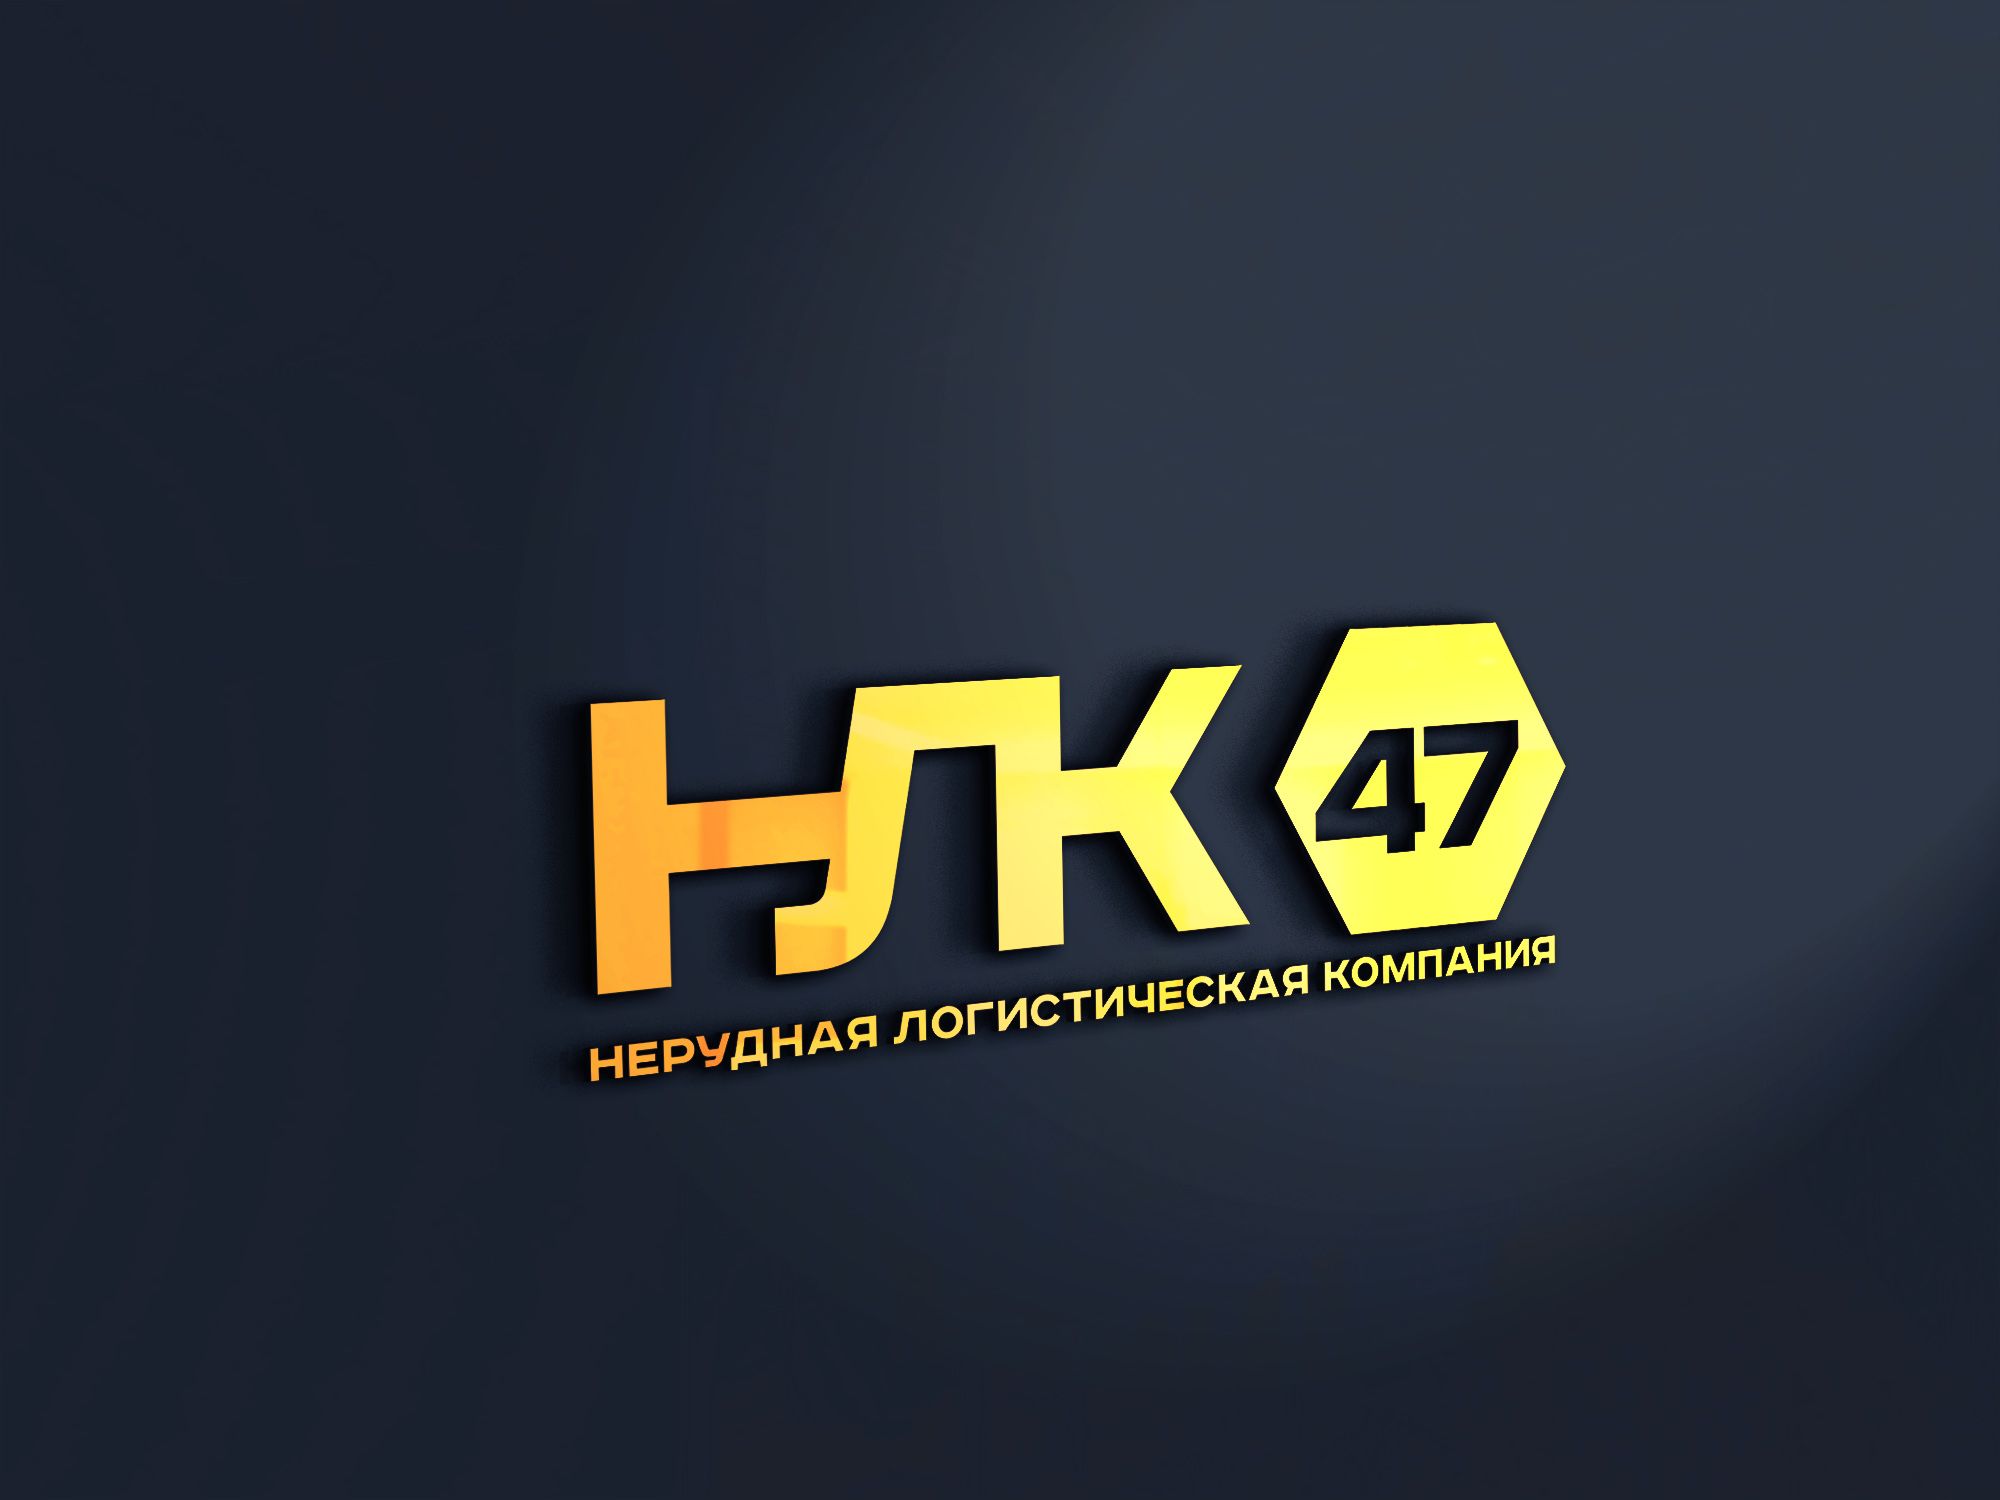 Лого и фирменный стиль для Нерудная логистическая компания 47 (НЛК 47) - дизайнер SmolinDenis